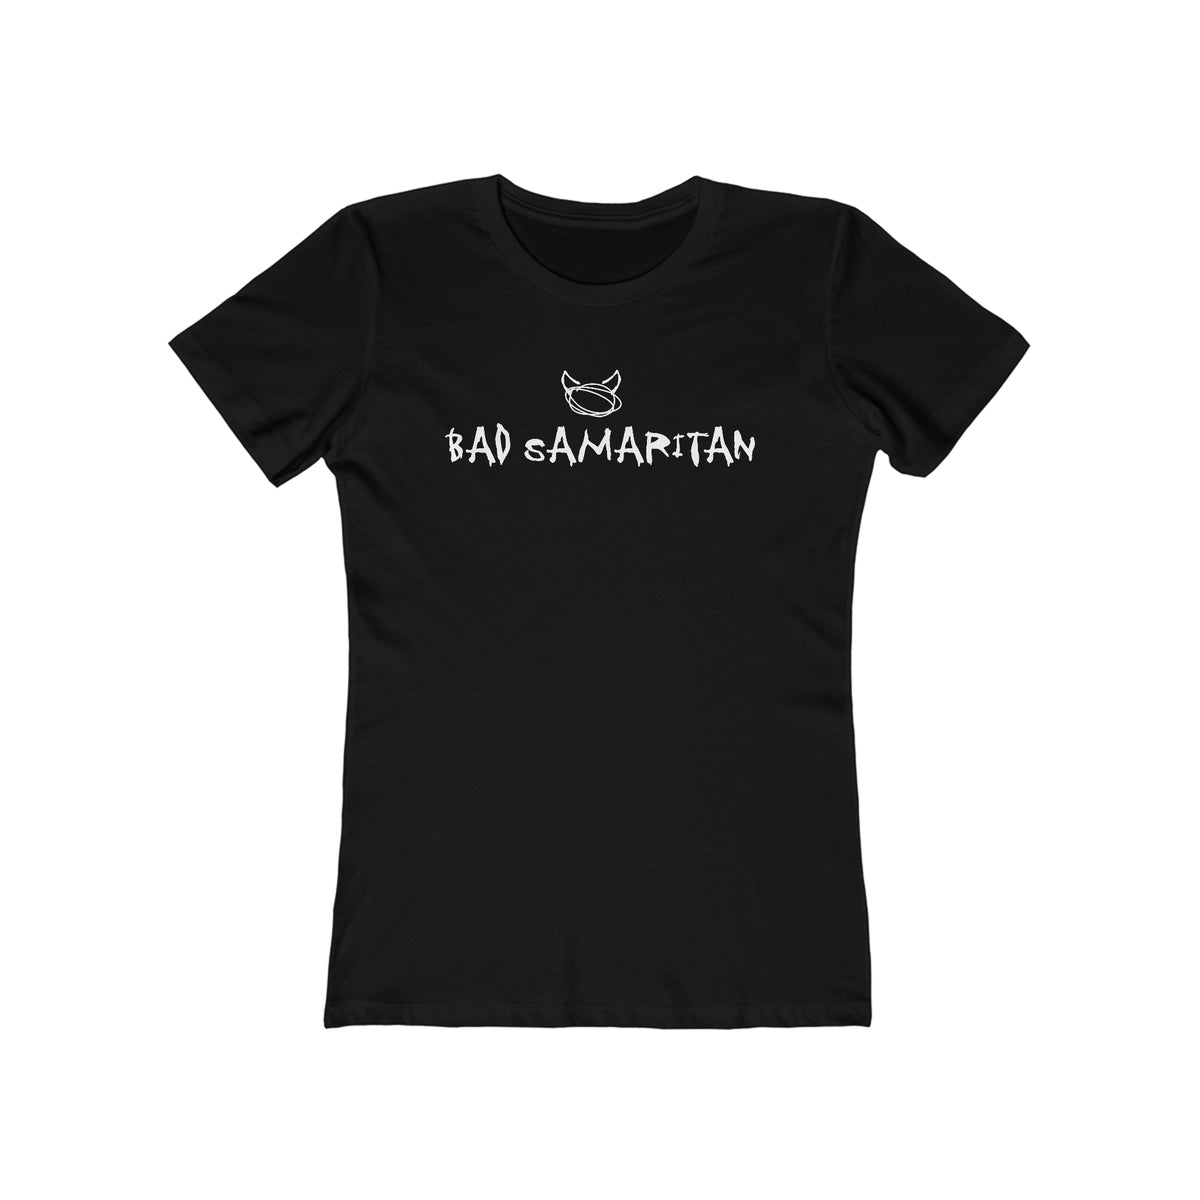 Bad Samaritan - Women’s T-Shirt